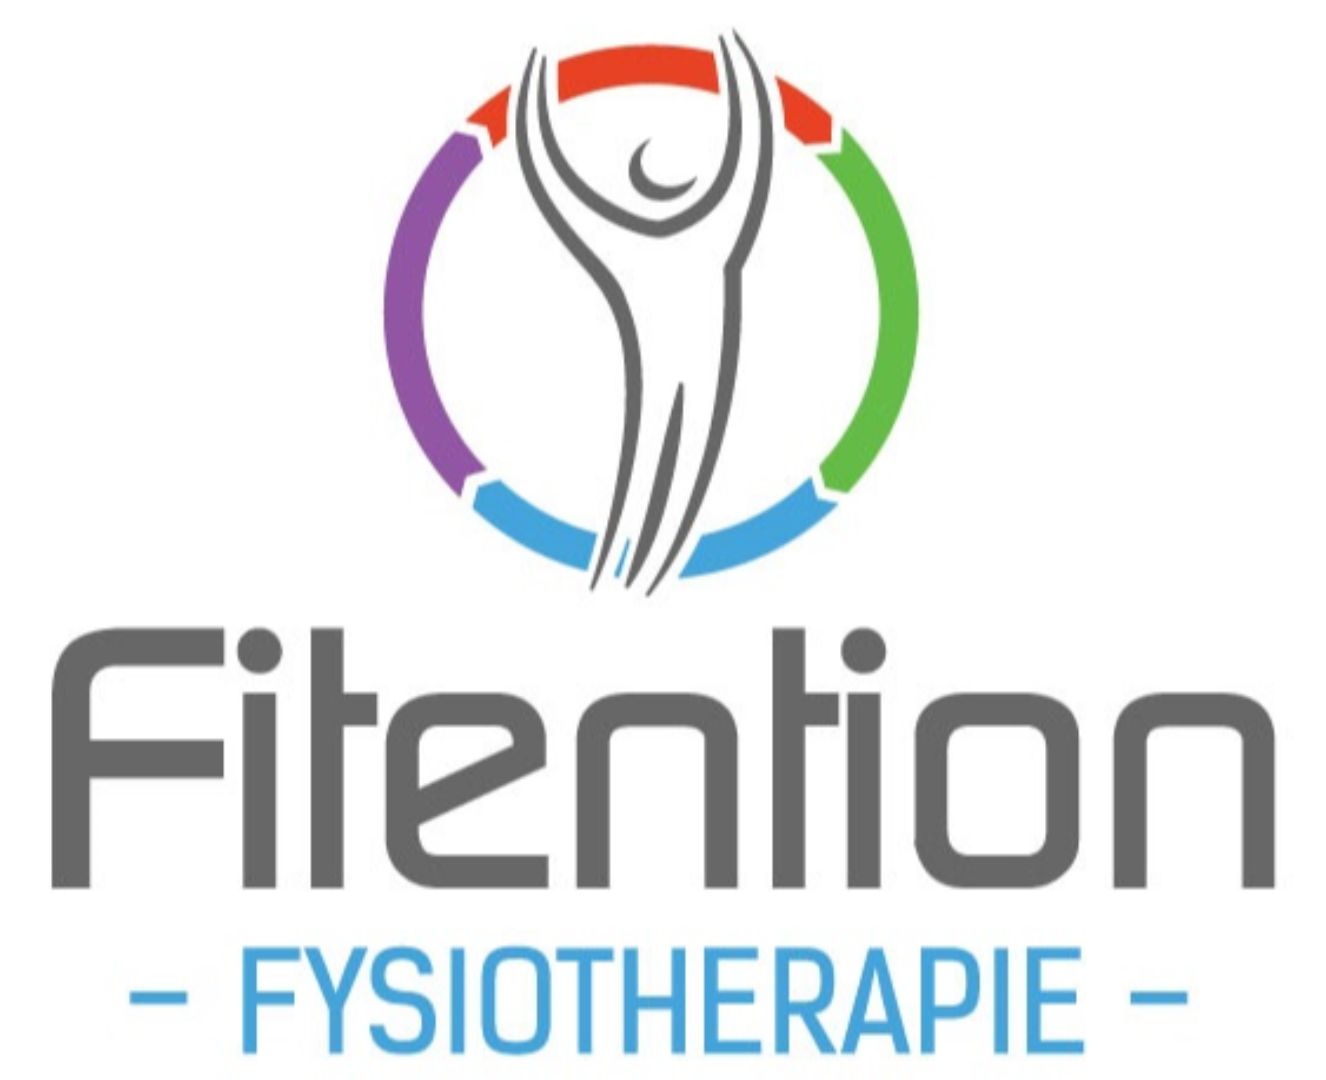 Fitention Fysiotherapie